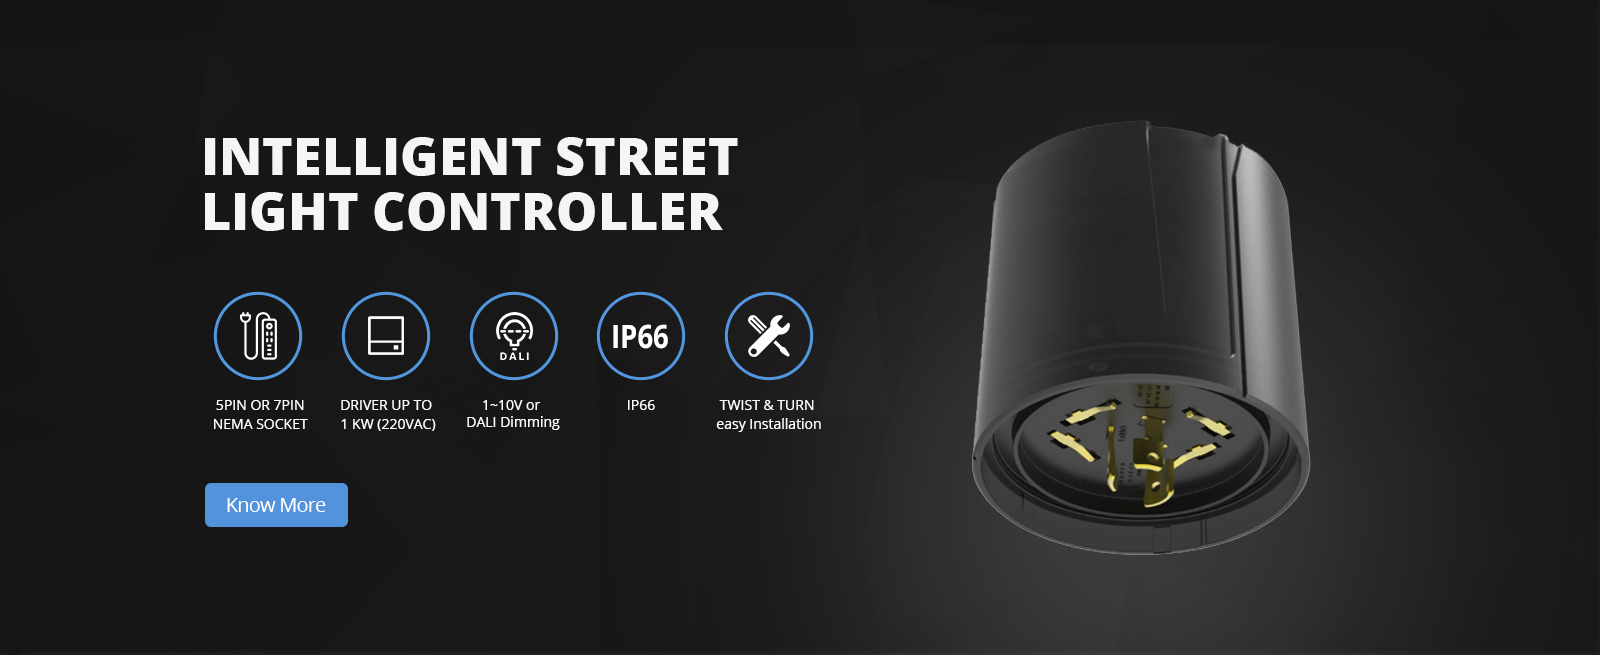 Intelligent Street Light Controller